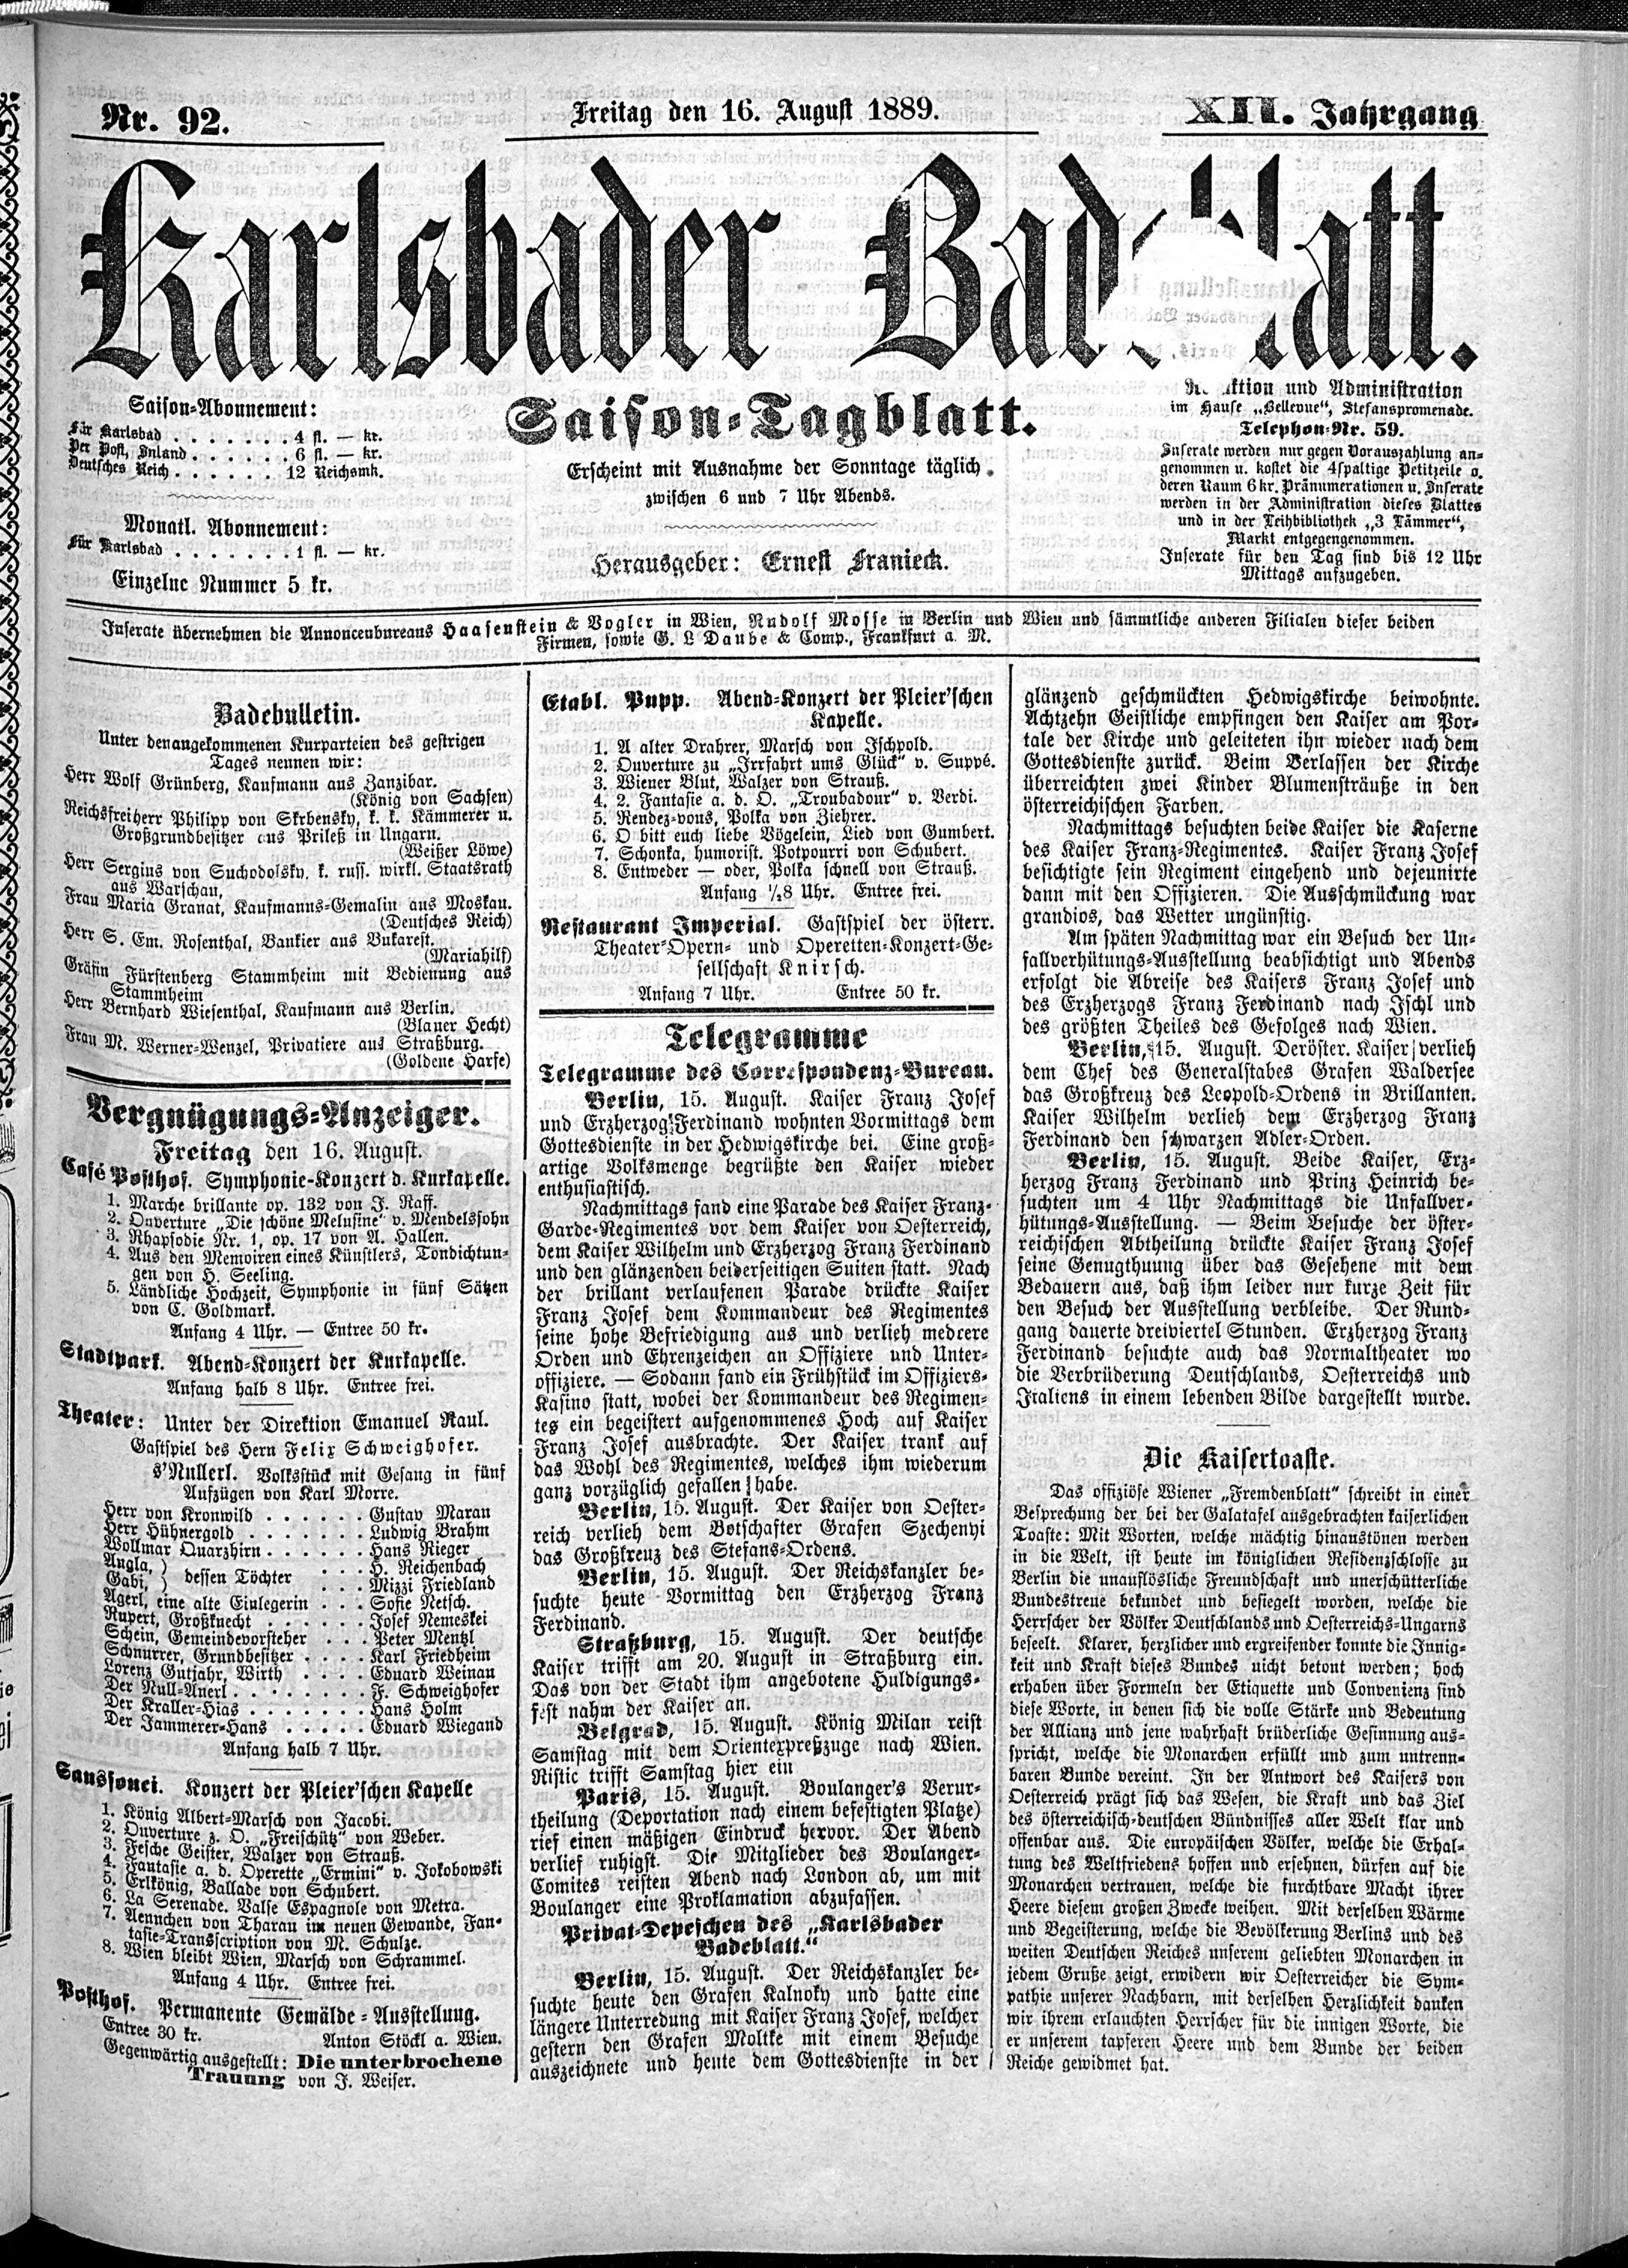 1. karlsbader-badeblatt-1889-08-16-n92_2685